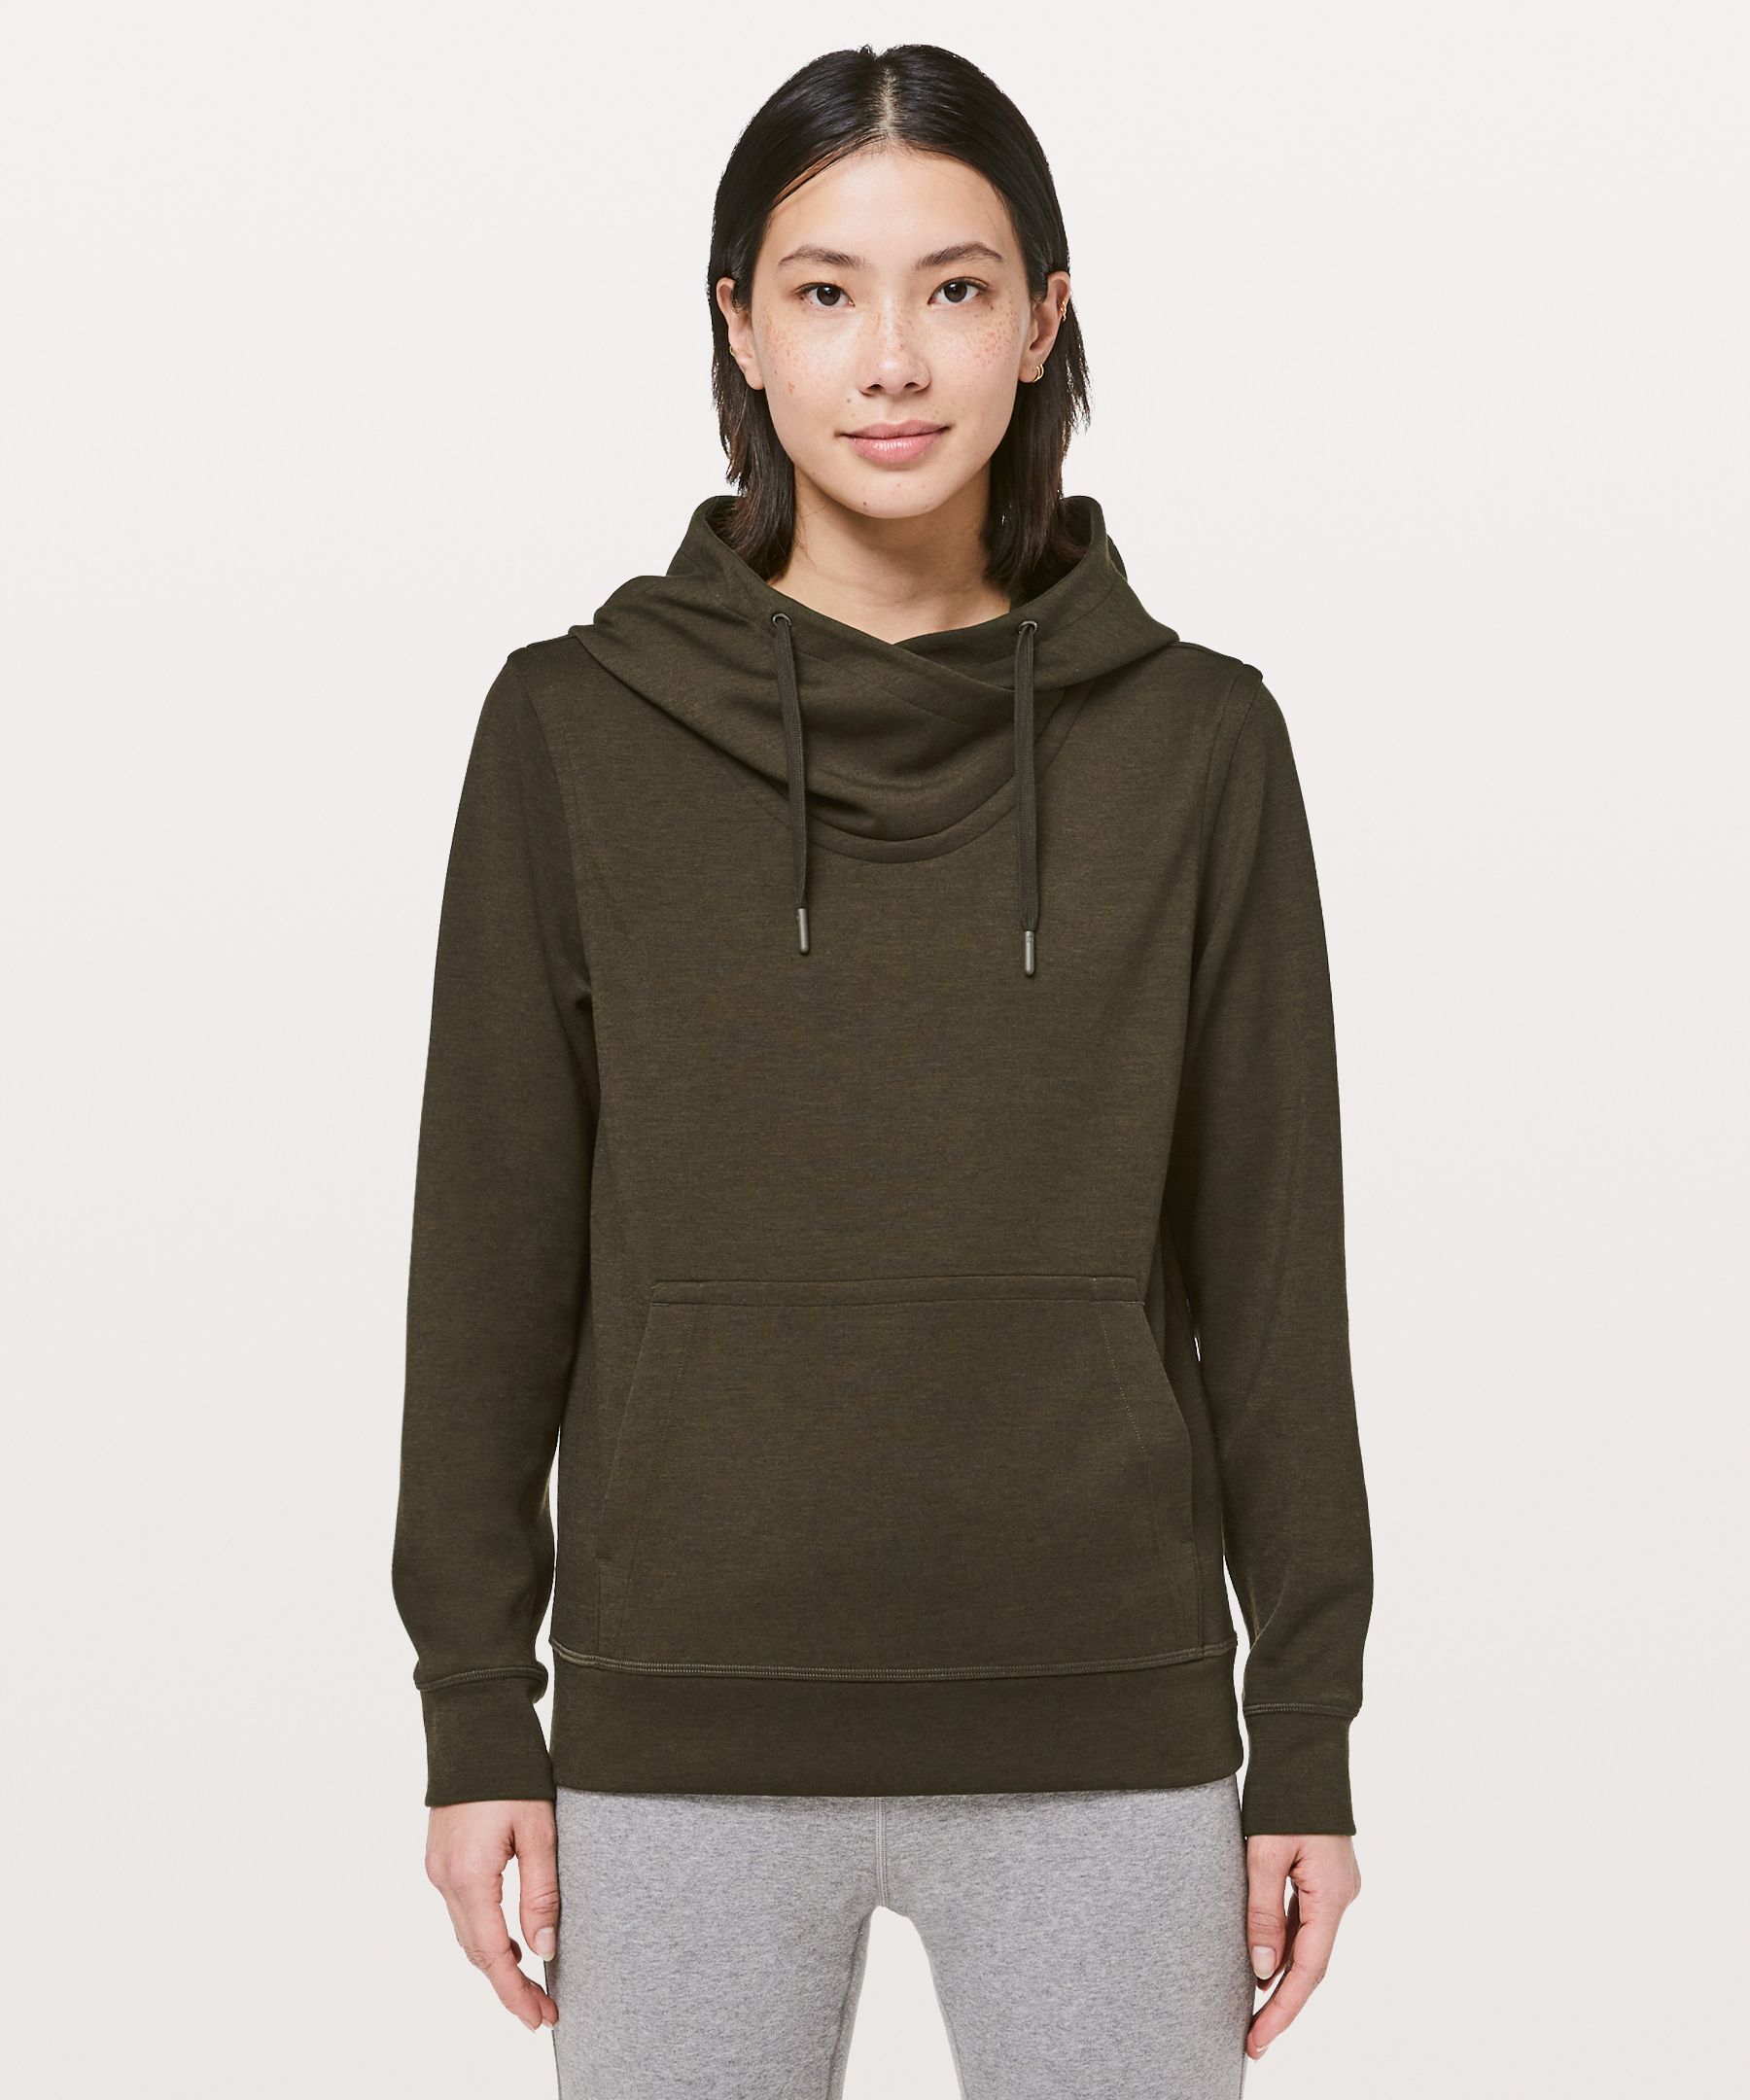 city sleek hoodie lululemon